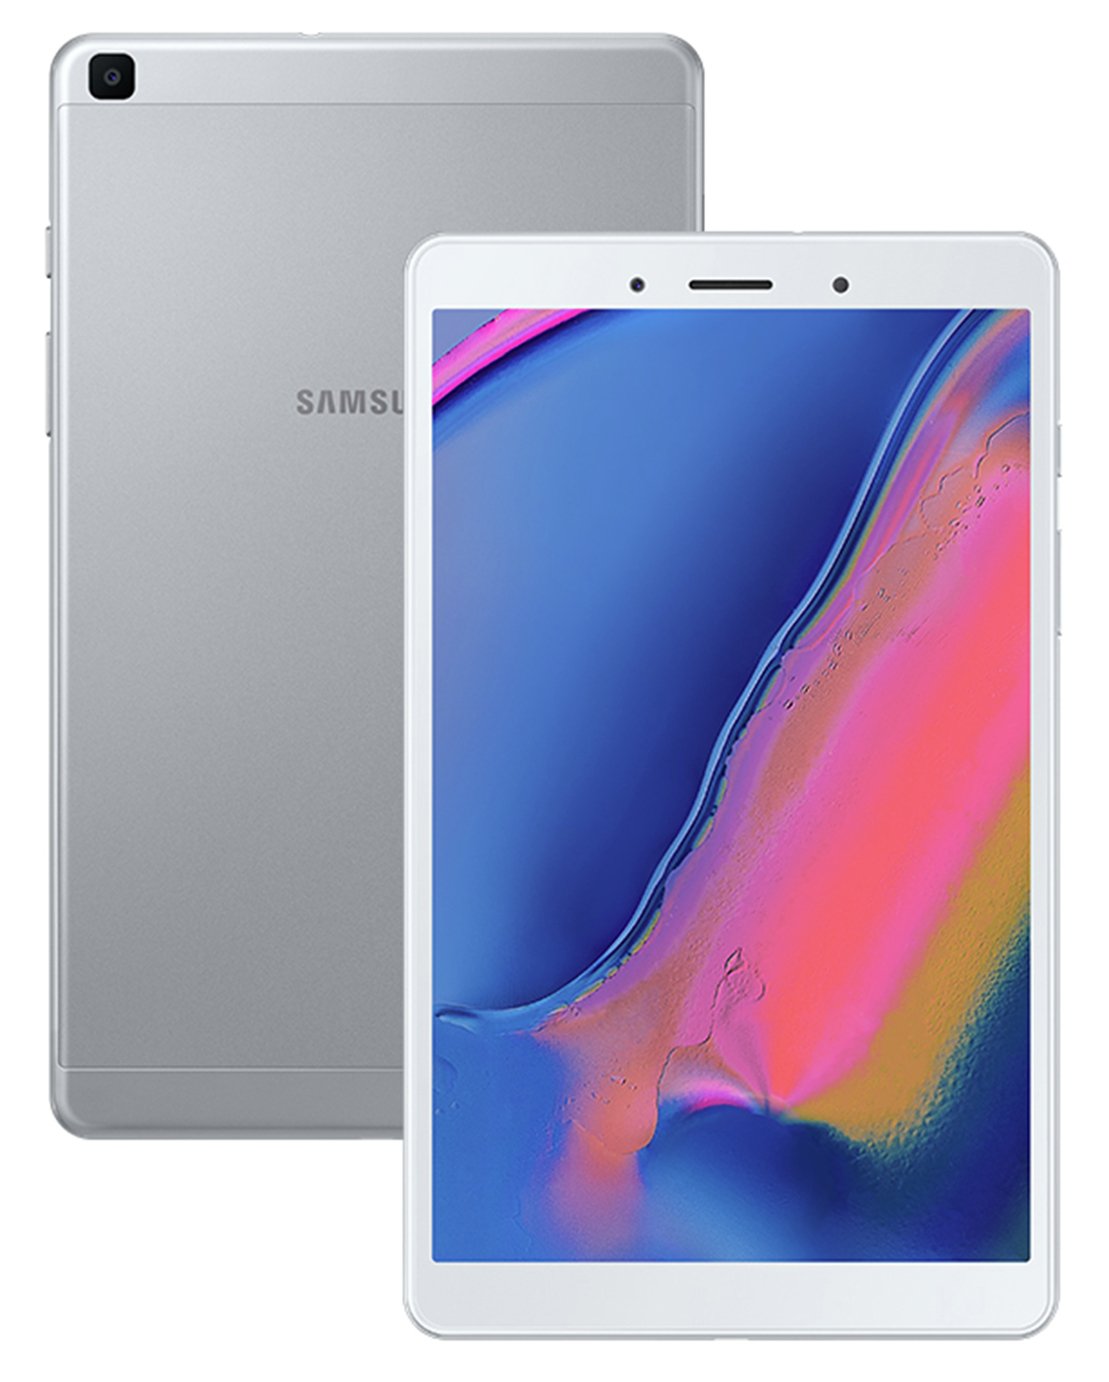 Samsung Galaxy Tab A8 2019 8 Inch 32GB Tablet - Silver